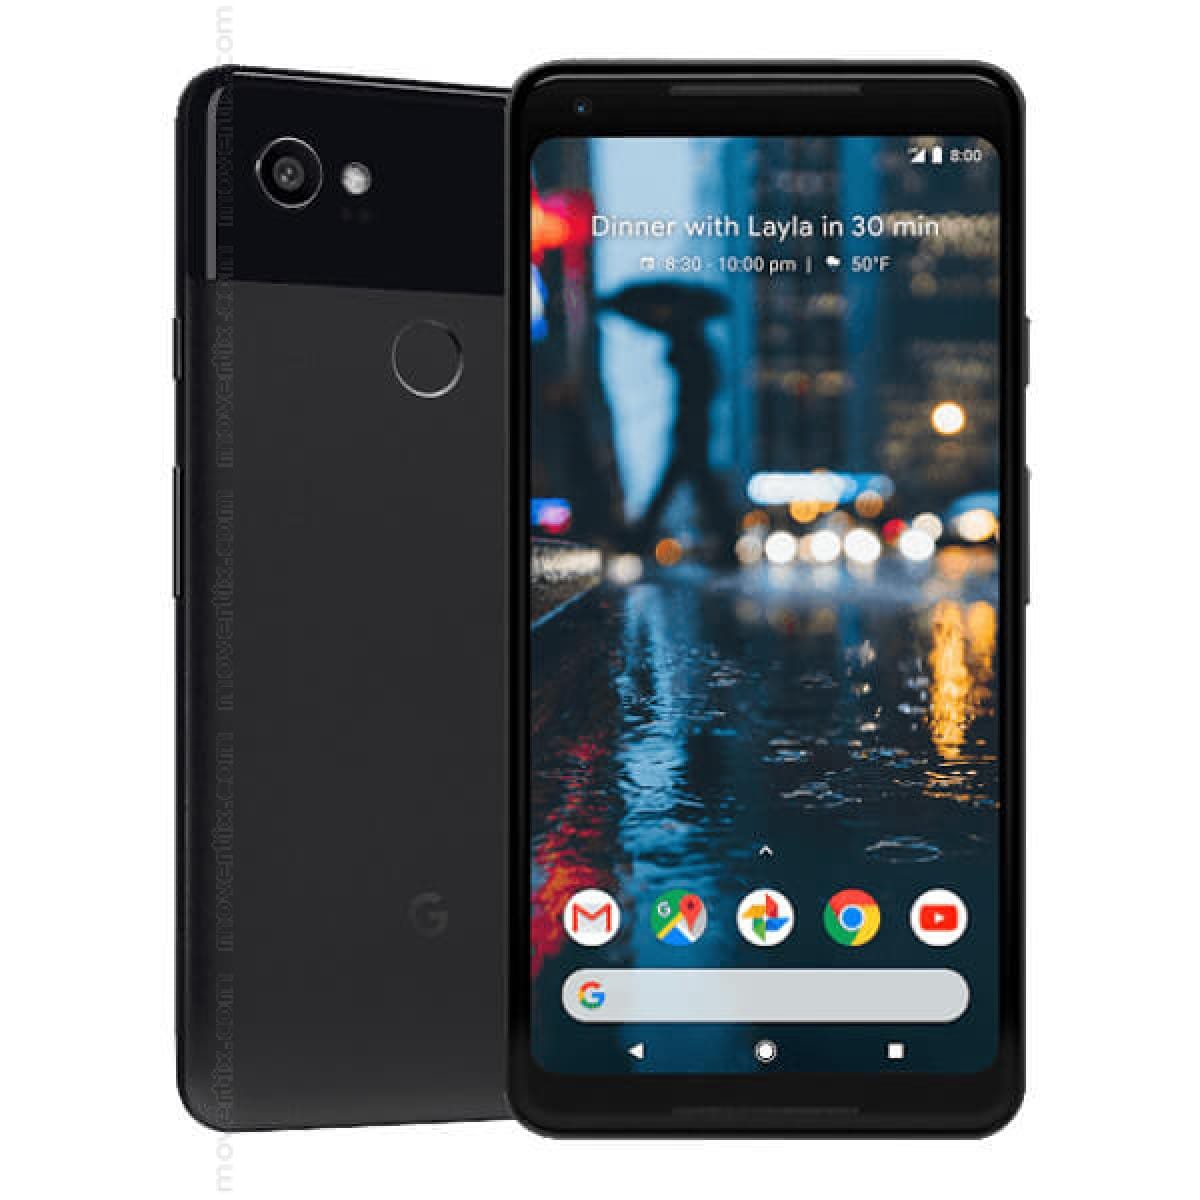 Google Pixel 2 XL - 128 GB - Black & White - Unlocked - GSM - UK